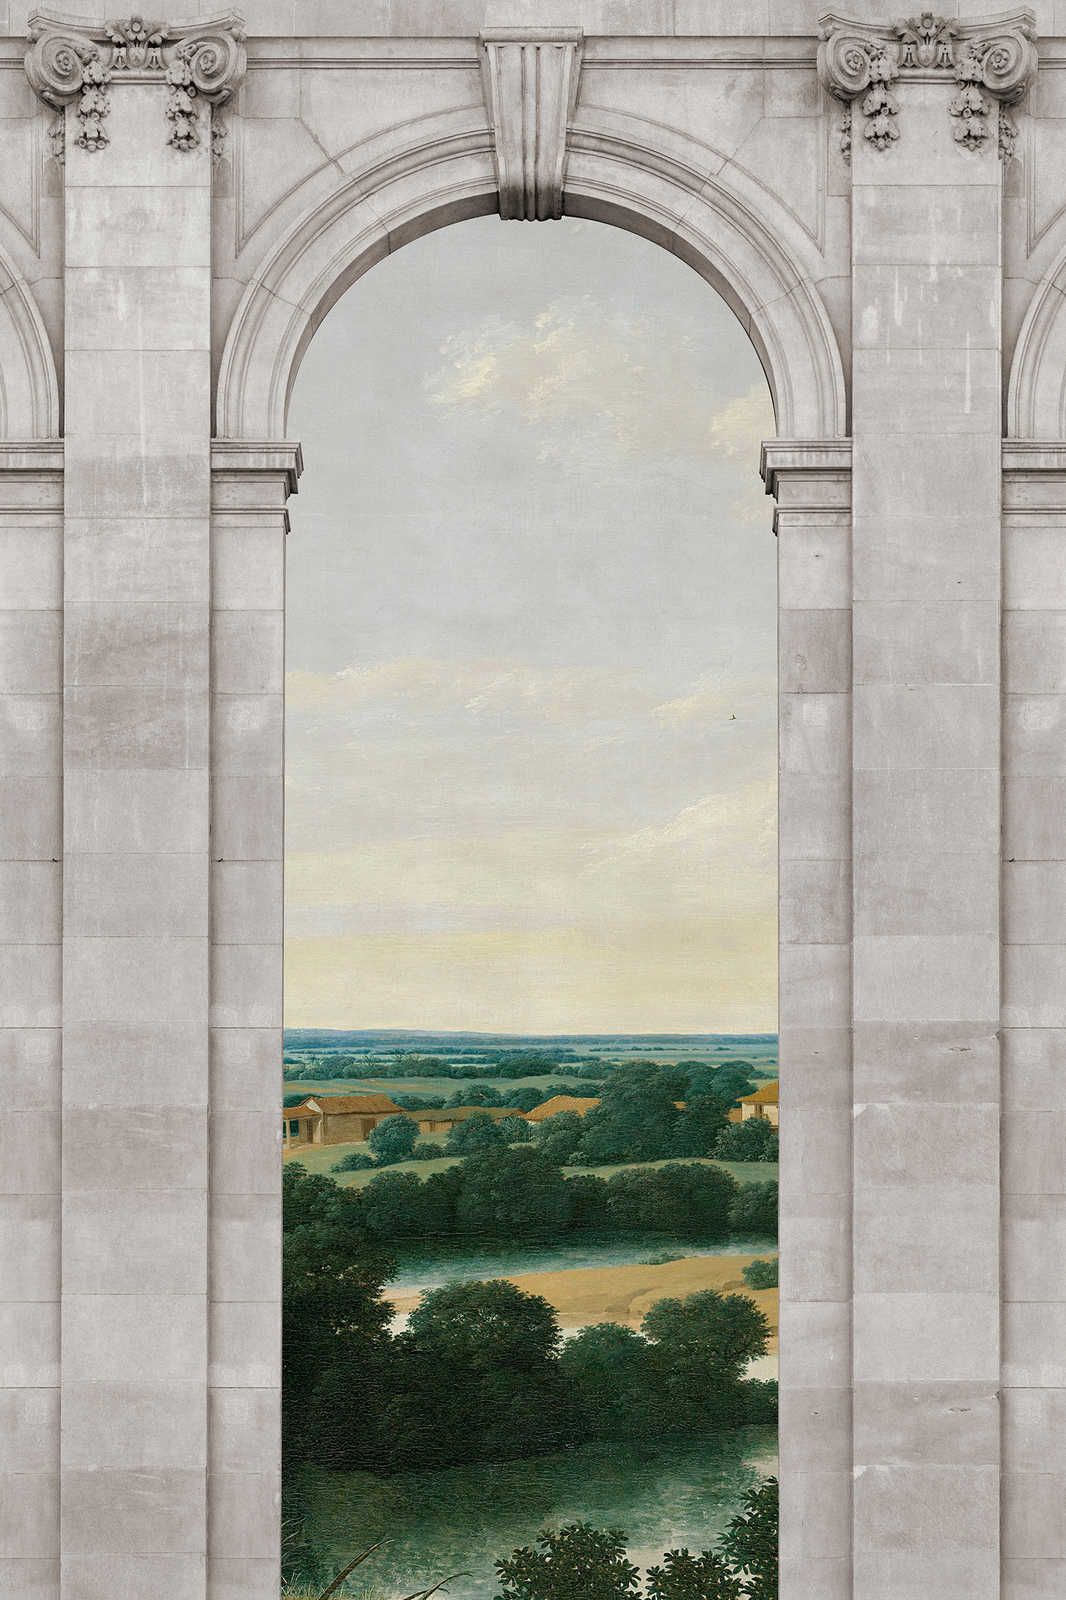             Castello 2 - Fenêtre Toile Arc & Vue Paysage - 1,20 m x 0,80 m
        